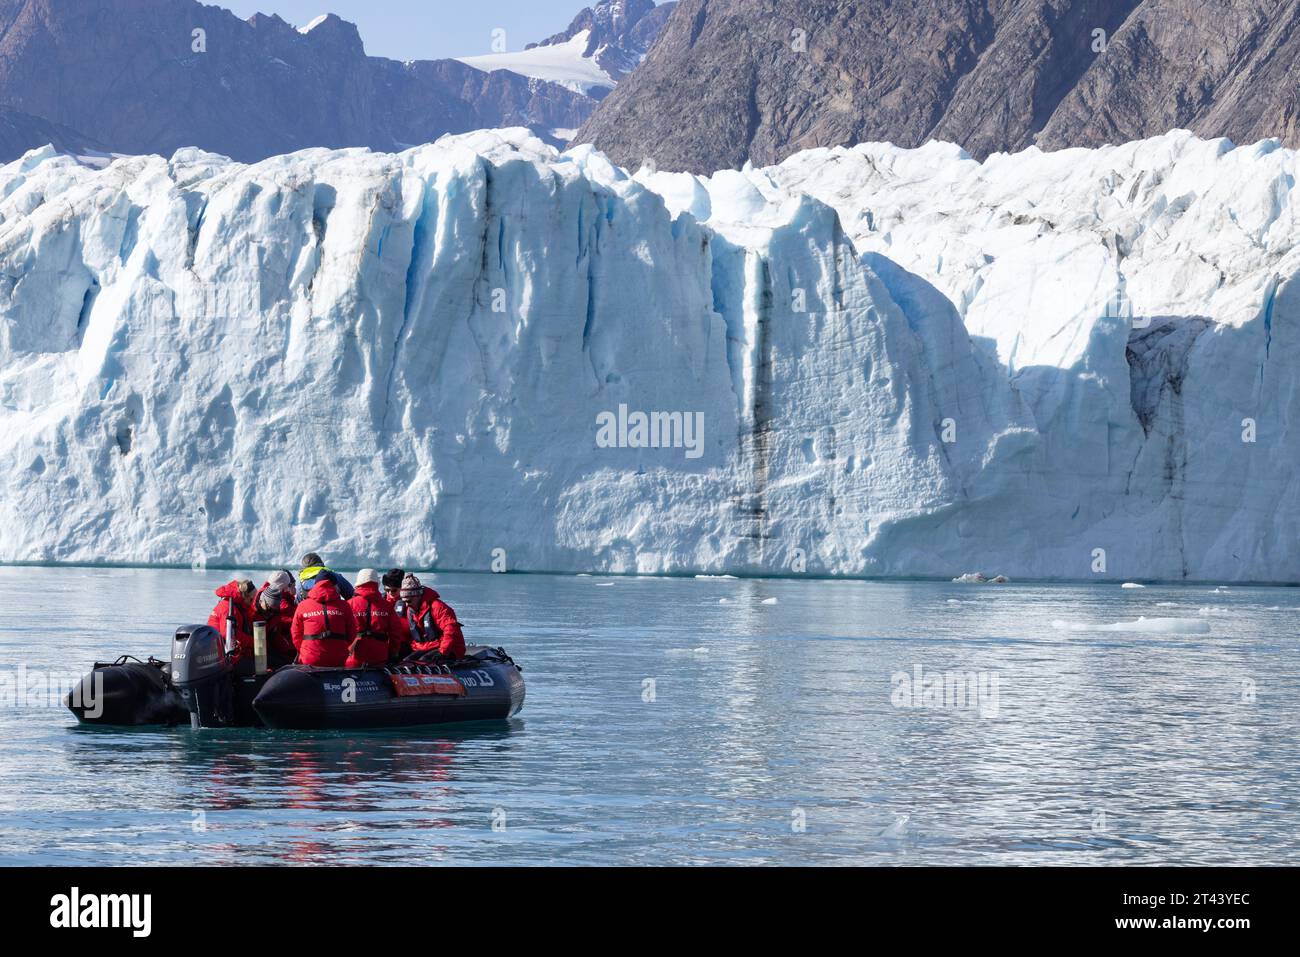 Grönlandgletscher - Touristen in einem aufblasbaren Tierkreislauf, die einen Blick aus nächster Nähe auf den Thrym-Gletscher, einen Outlet-Gletscher, Skjoldungen-Fjord, Ostgrönland haben Stockfoto